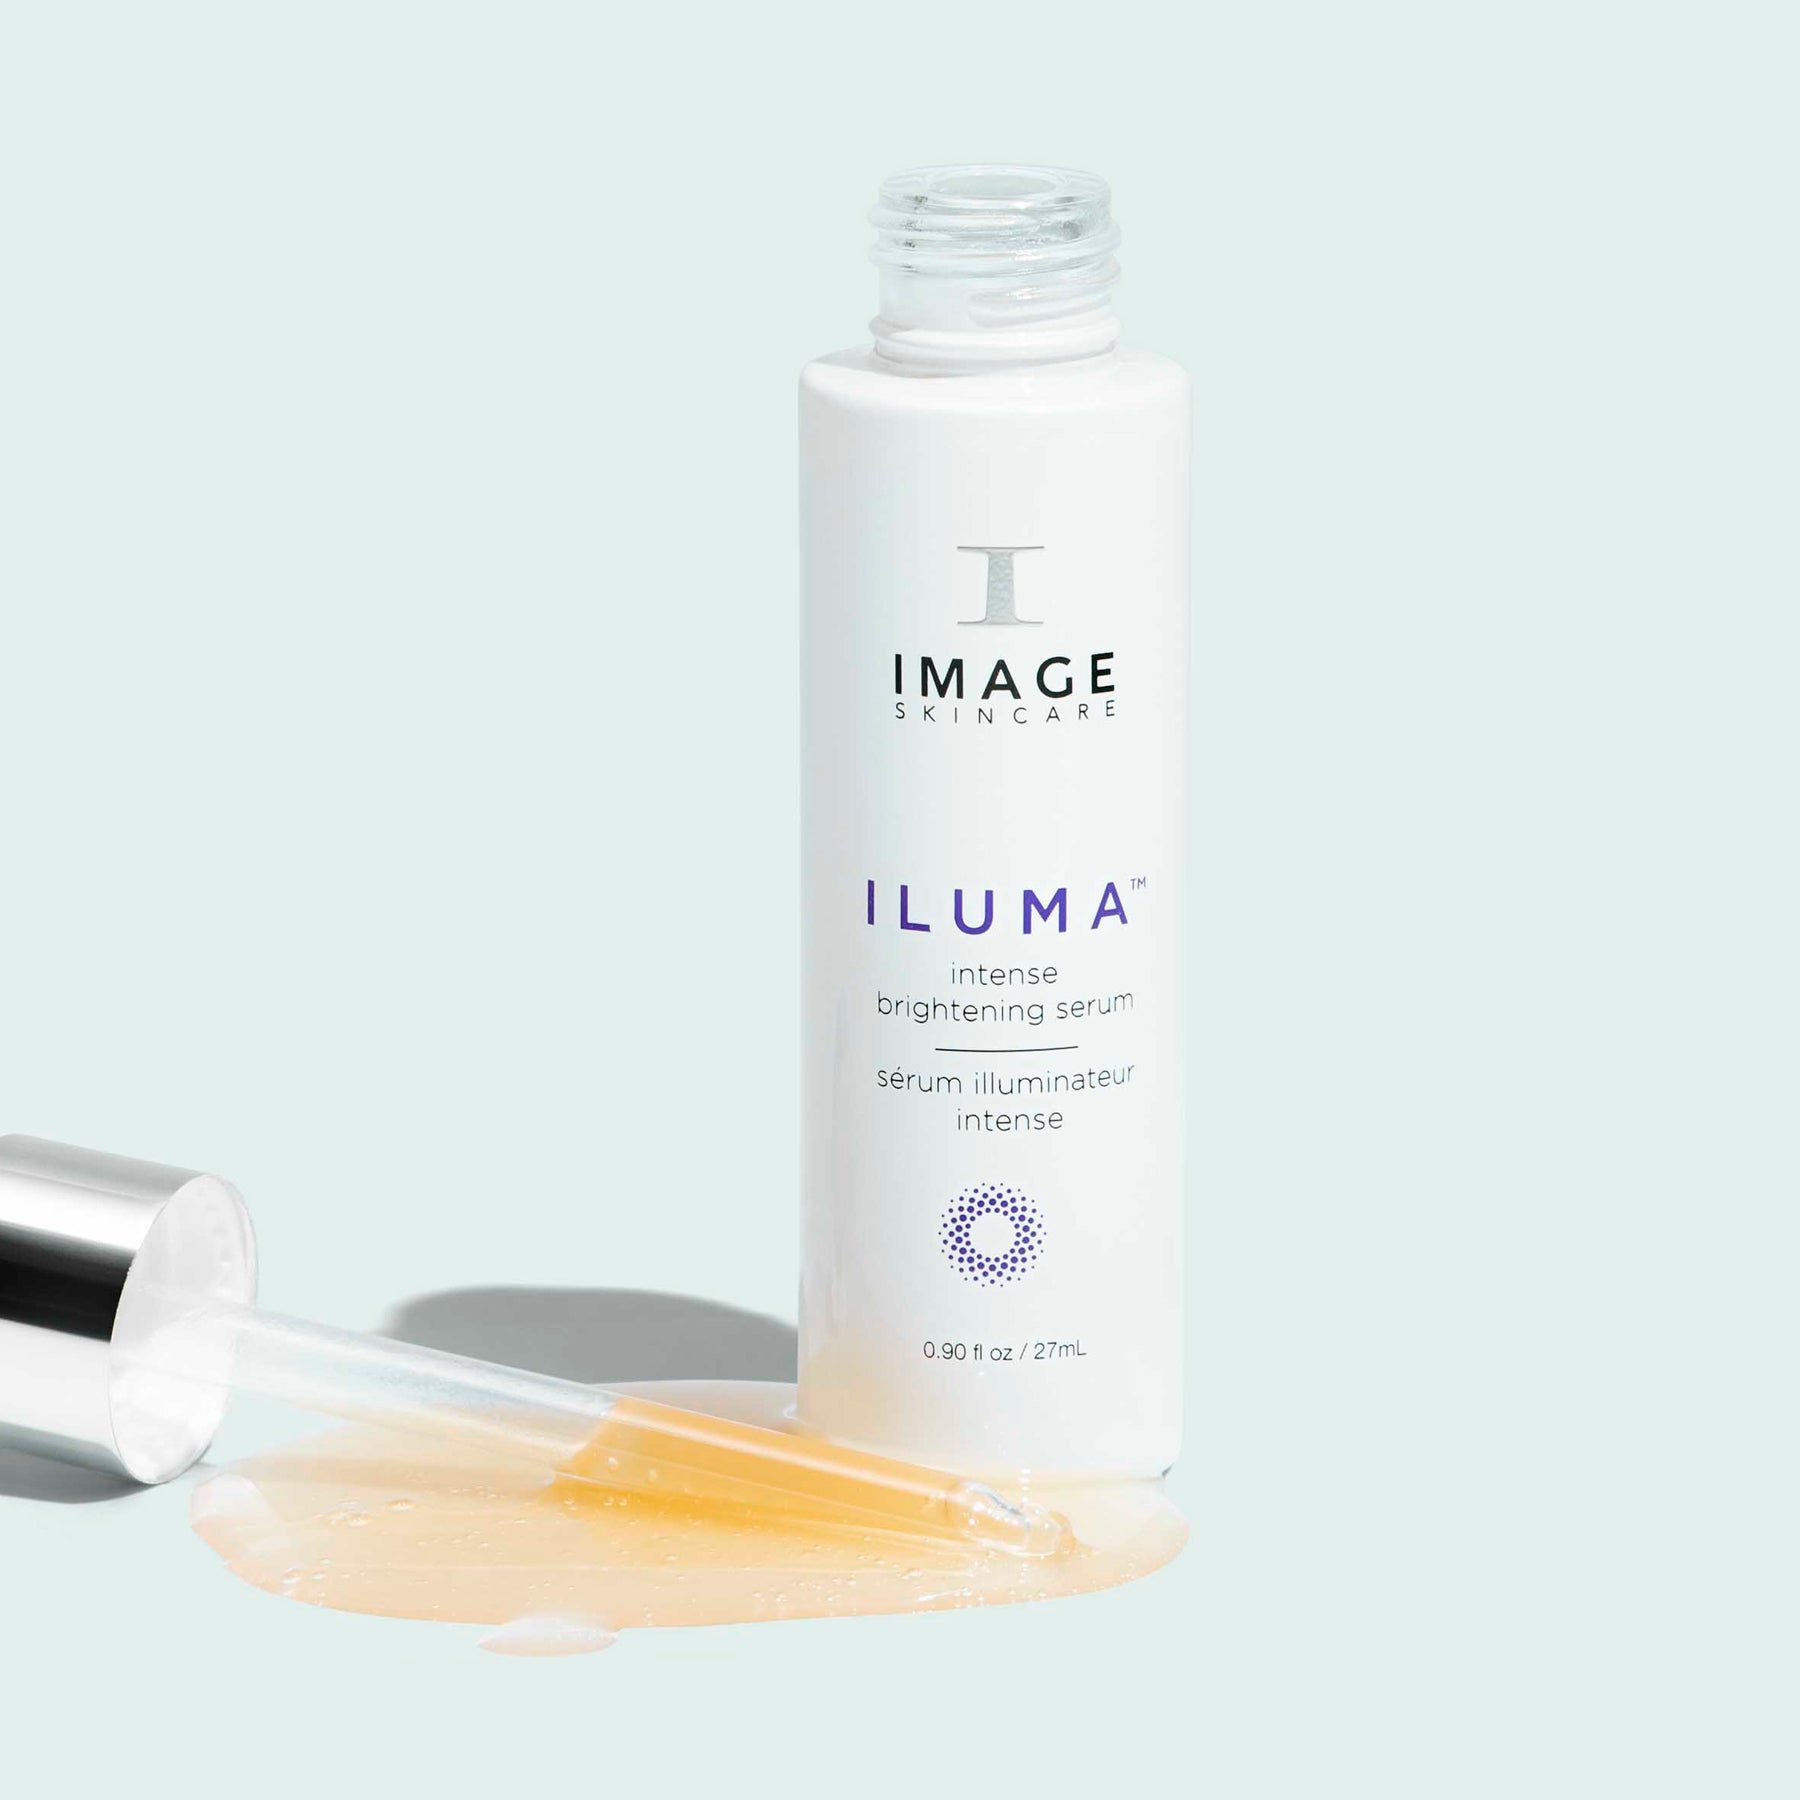 iluma brightening serum